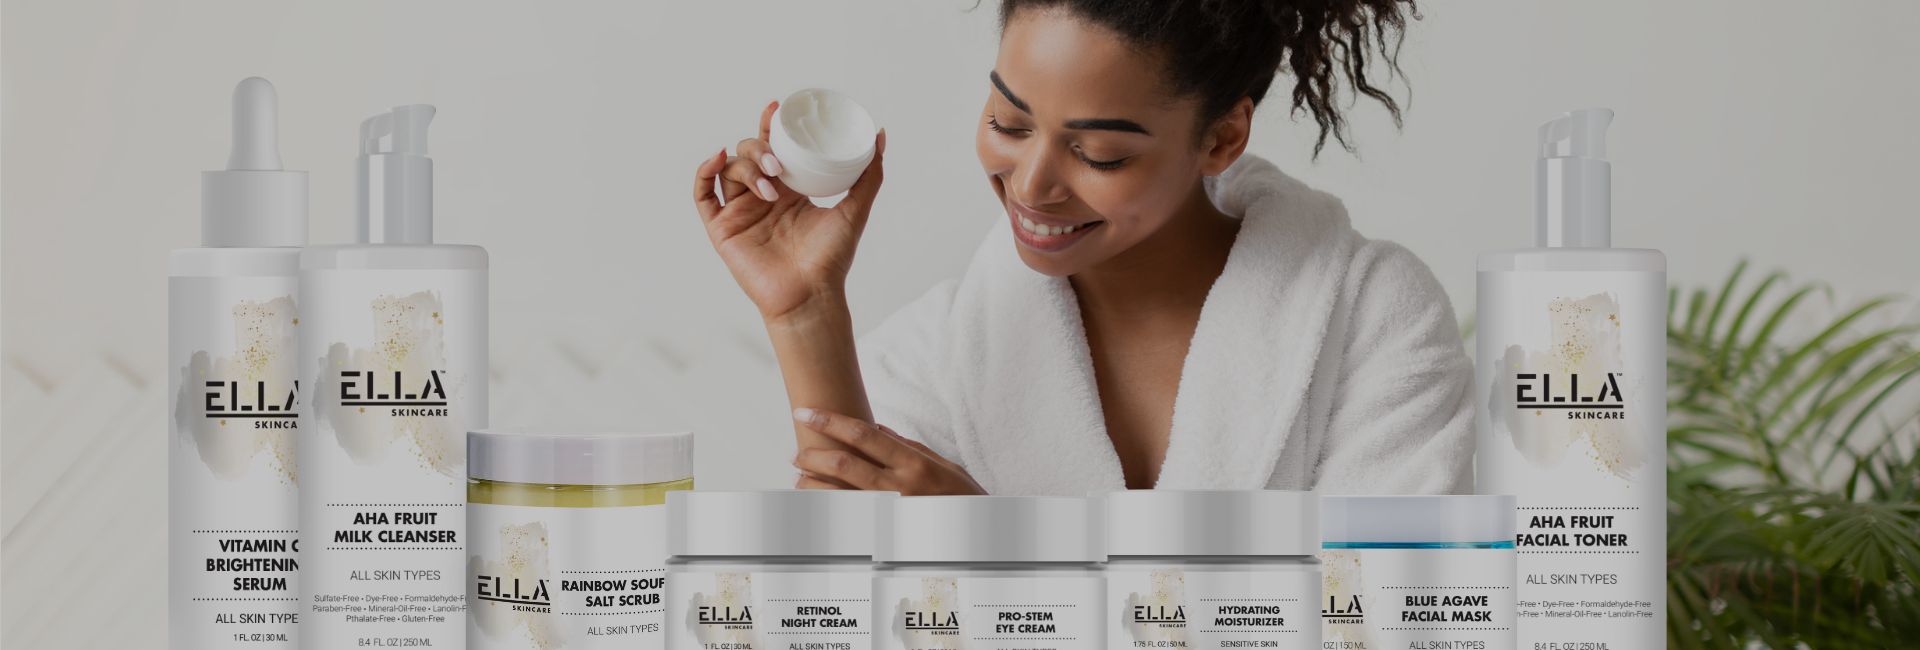 Fusion CBD Products Ella skincare for women